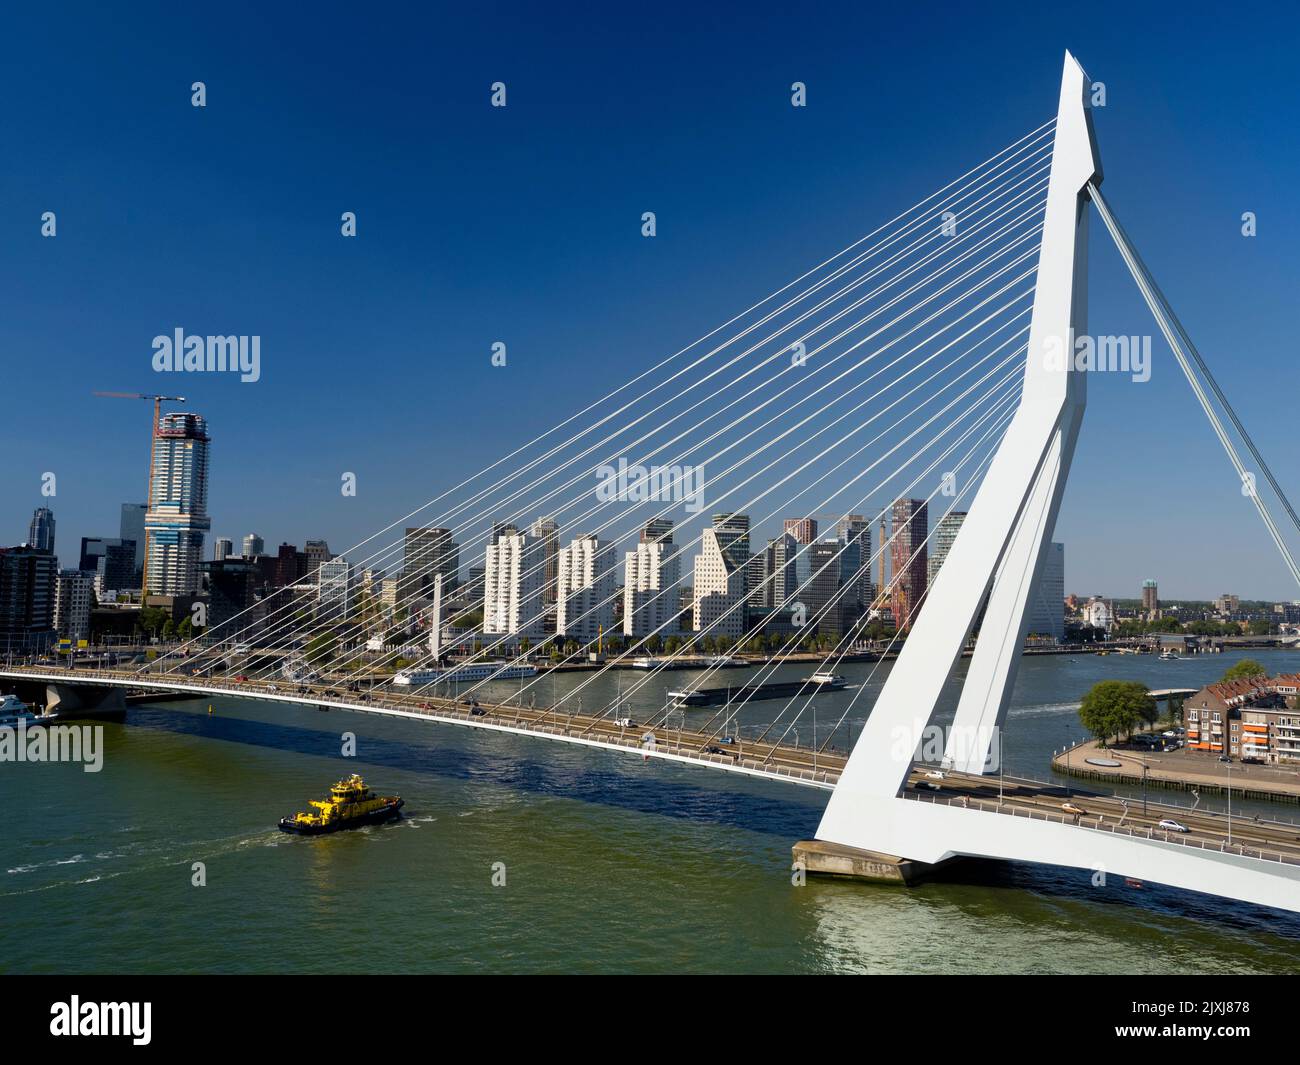 Llamado así por el gran filósofo y humanista holandés renacentista, el hermoso puente colgante de Rotterdam se suma considerablemente al horizonte de la ciudad Foto de stock